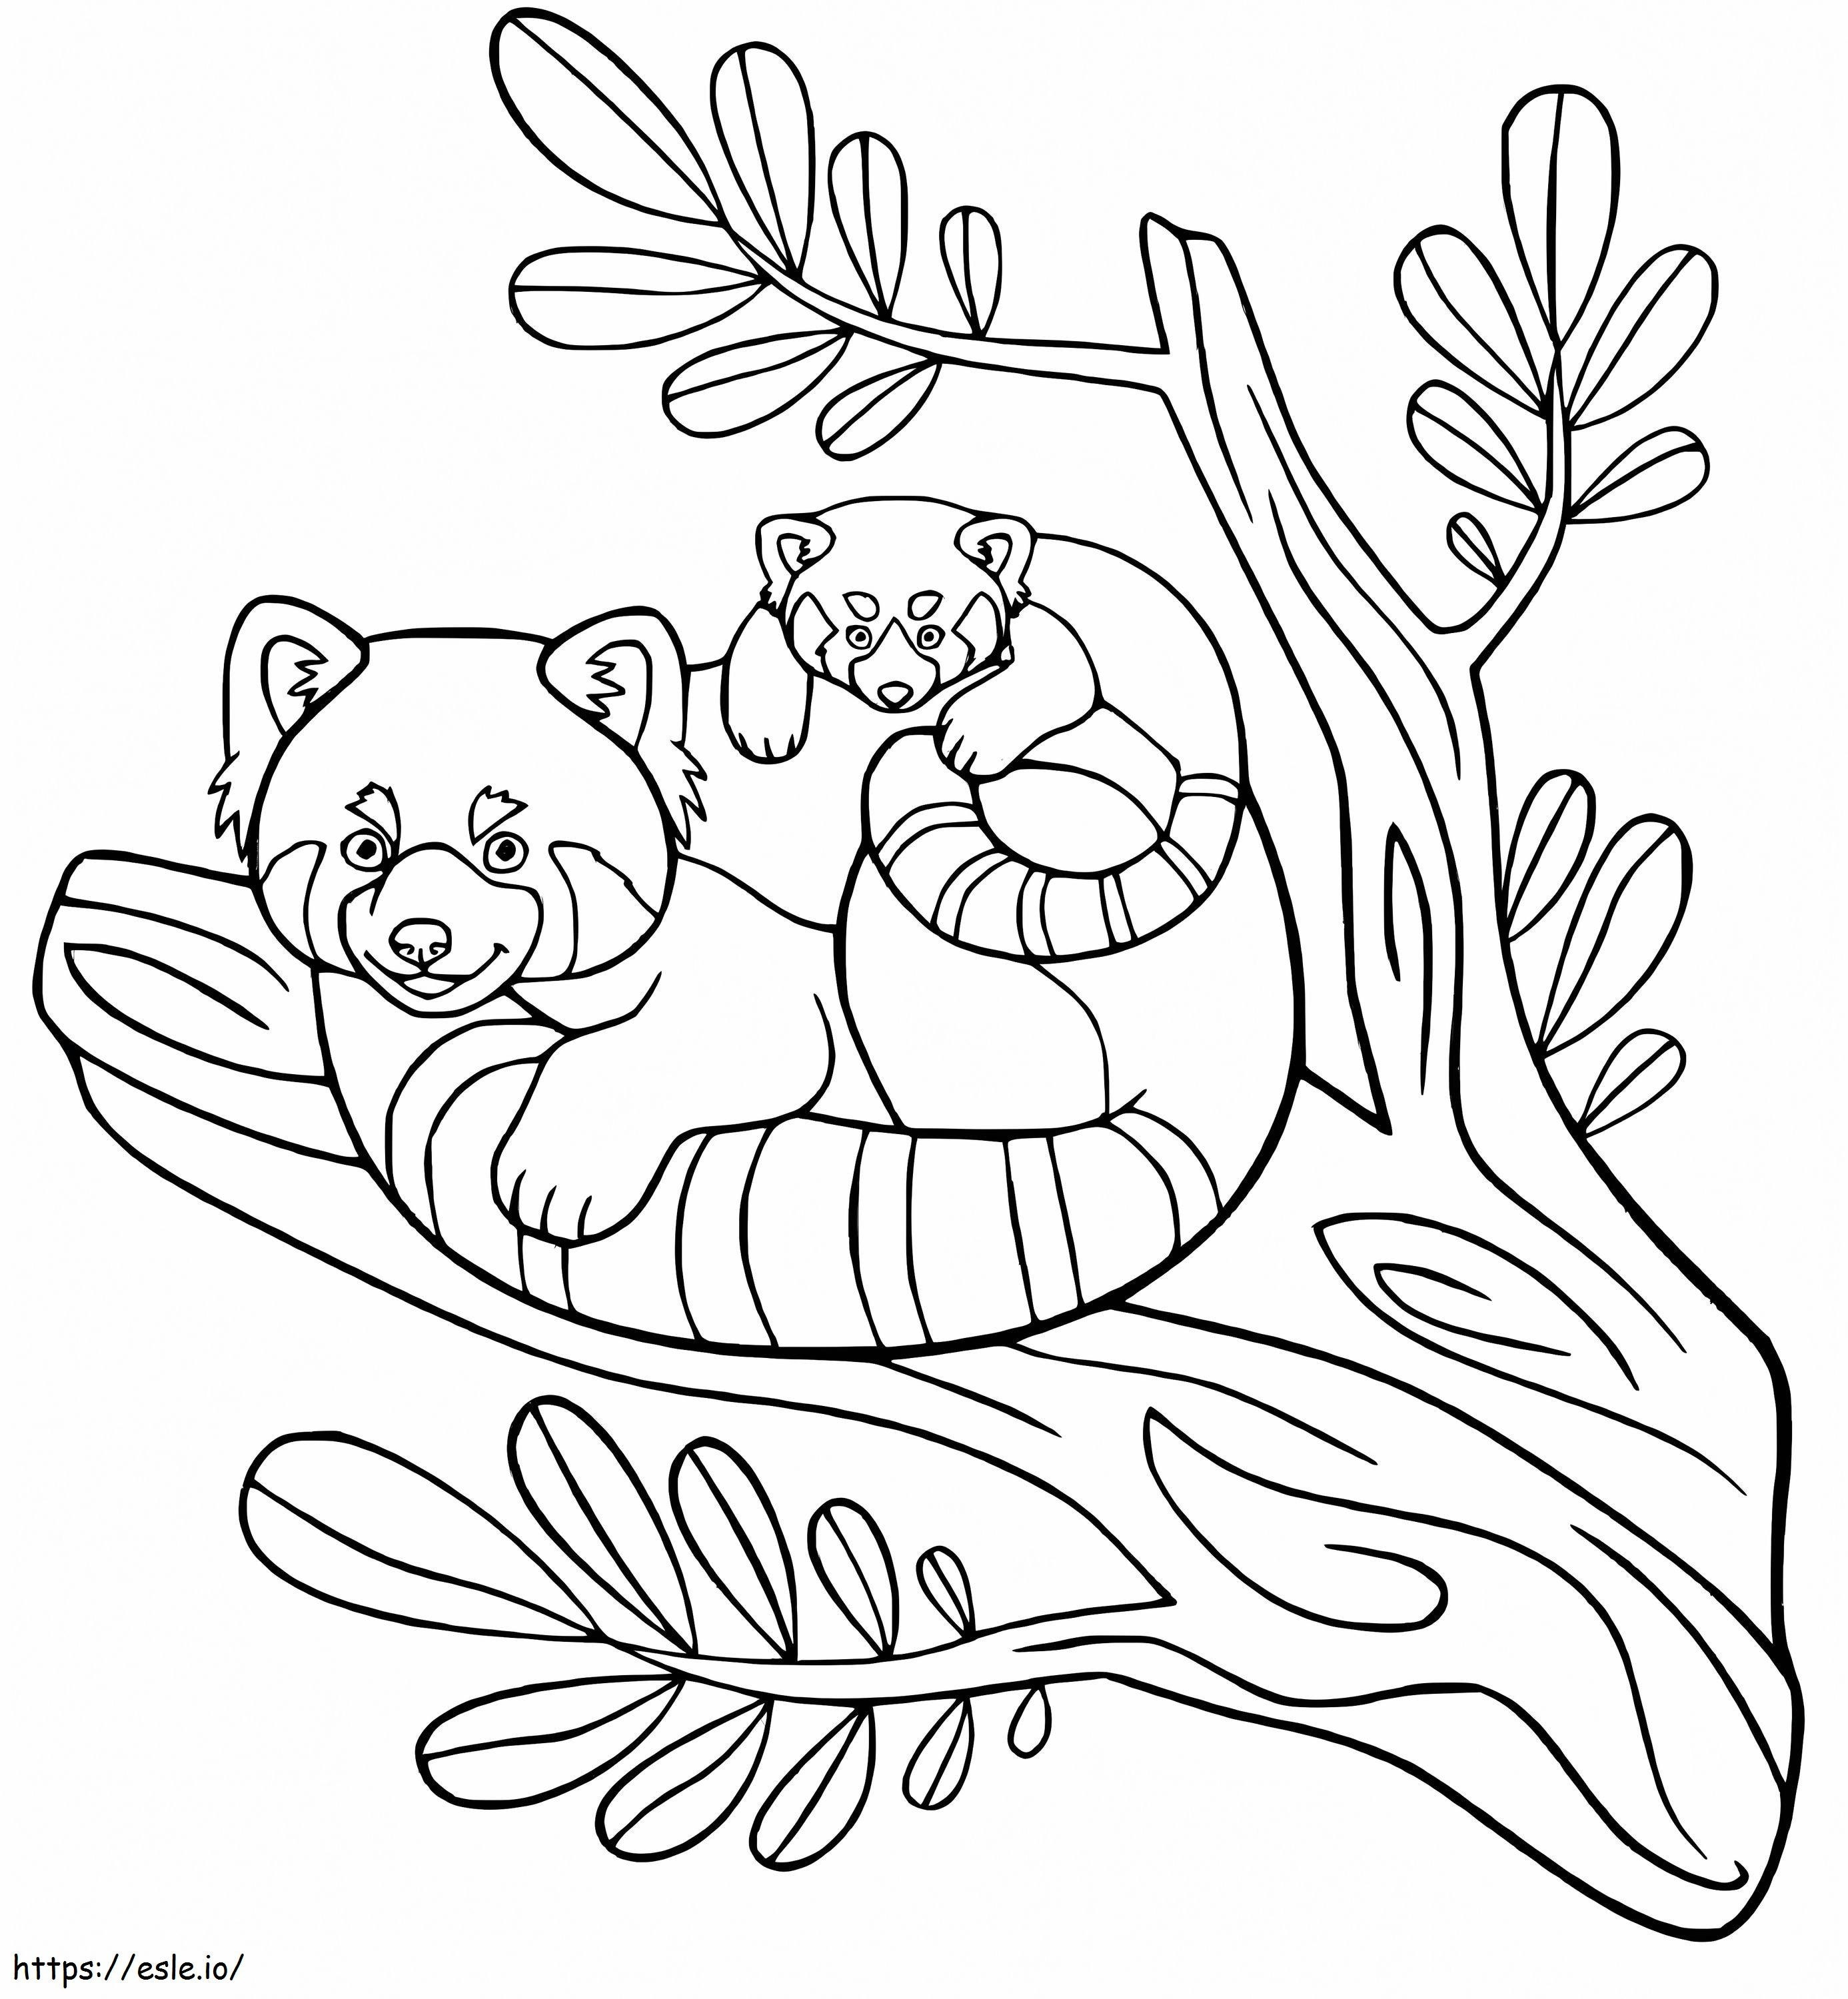 Madre y bebé panda en la rama de un árbol para colorear